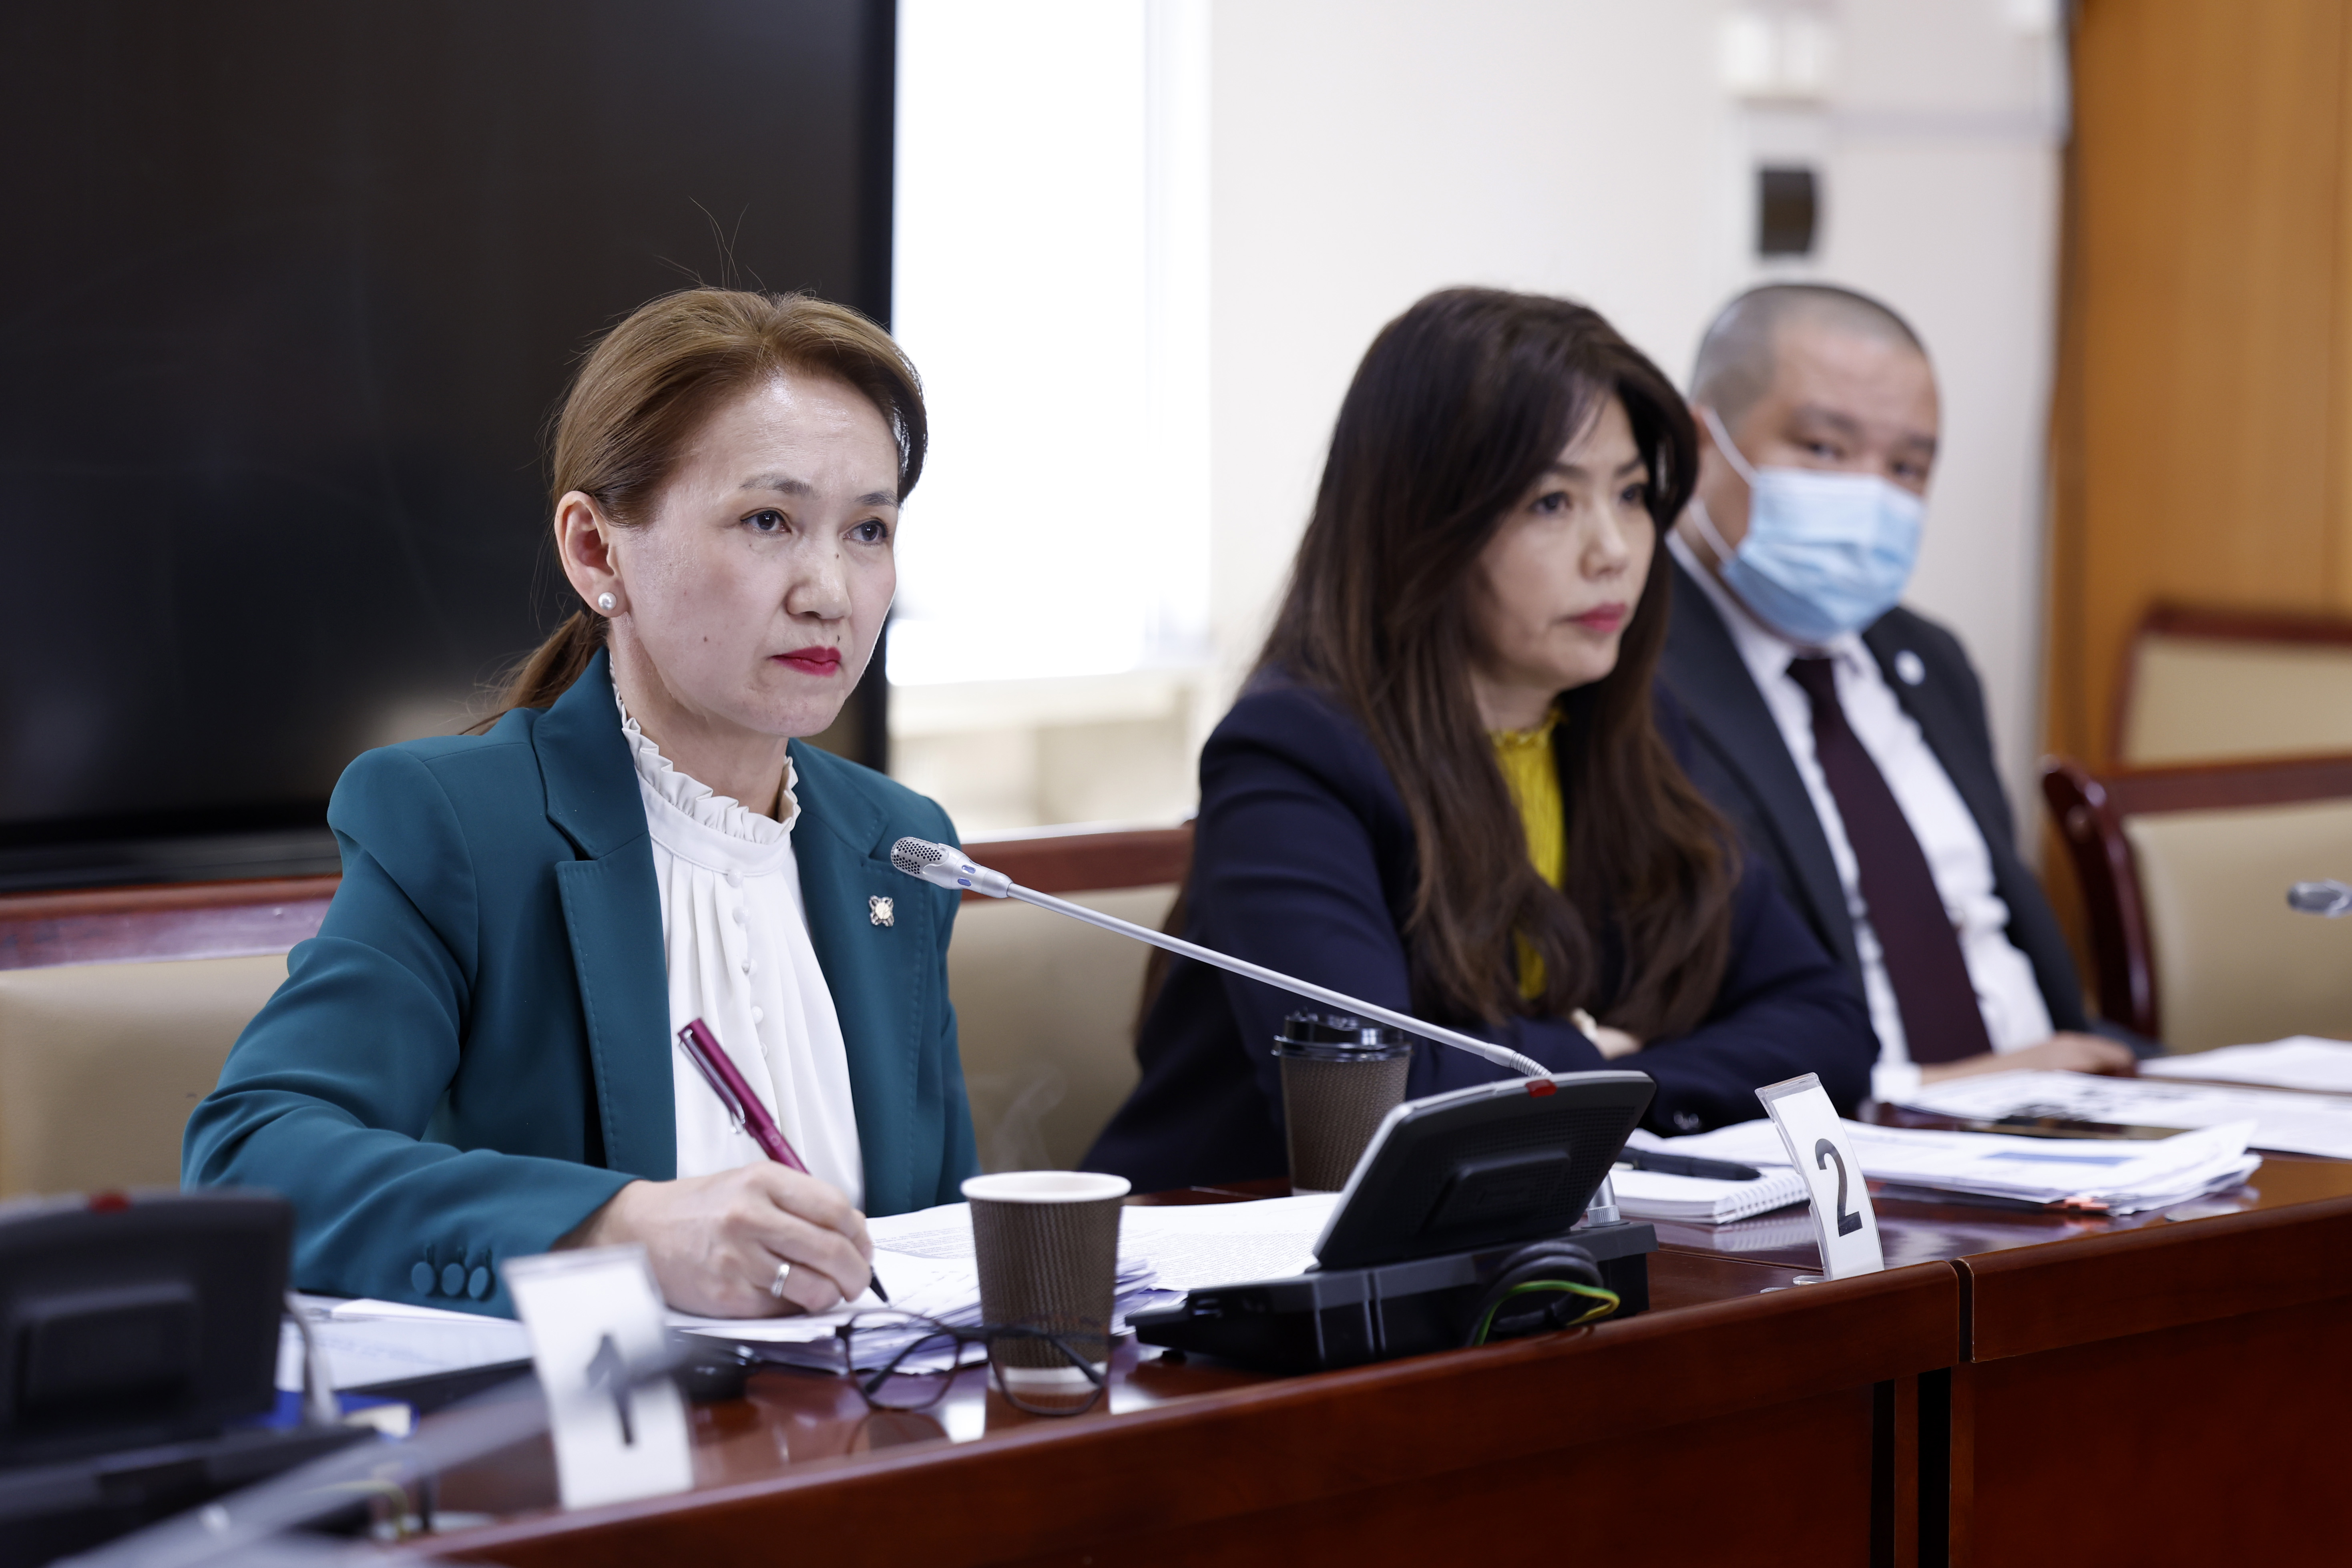 Монгол Улс дахь хүний эрх, эрх чөлөөний талаарх 23 дахь илтгэлийг УИХ-ын Хууль зүйн байнгын хорооны хуралдаанаар хэлэлцэв